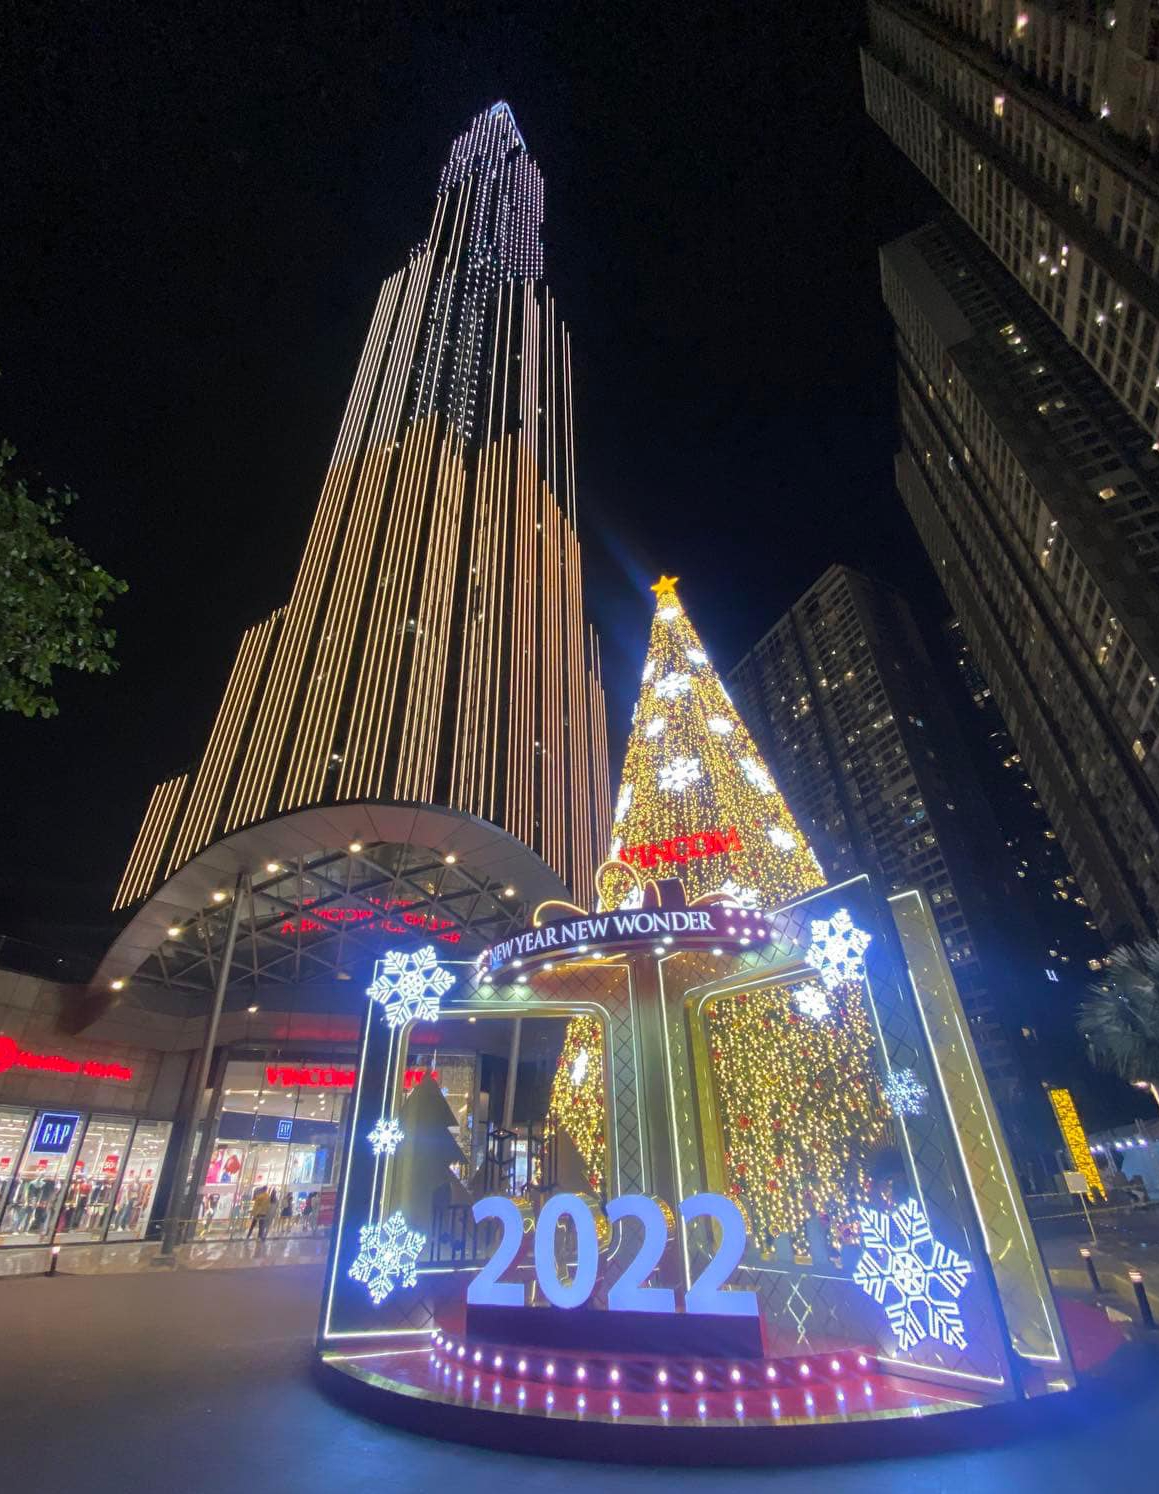 Bạn đã bao giờ ngắm nhìn một cây thông Noel khổng lồ chưa? Hãy chiêm ngưỡng hình ảnh này để khám phá vẻ đẹp và sự trang trọng của một ngày lễ quan trọng trong năm.